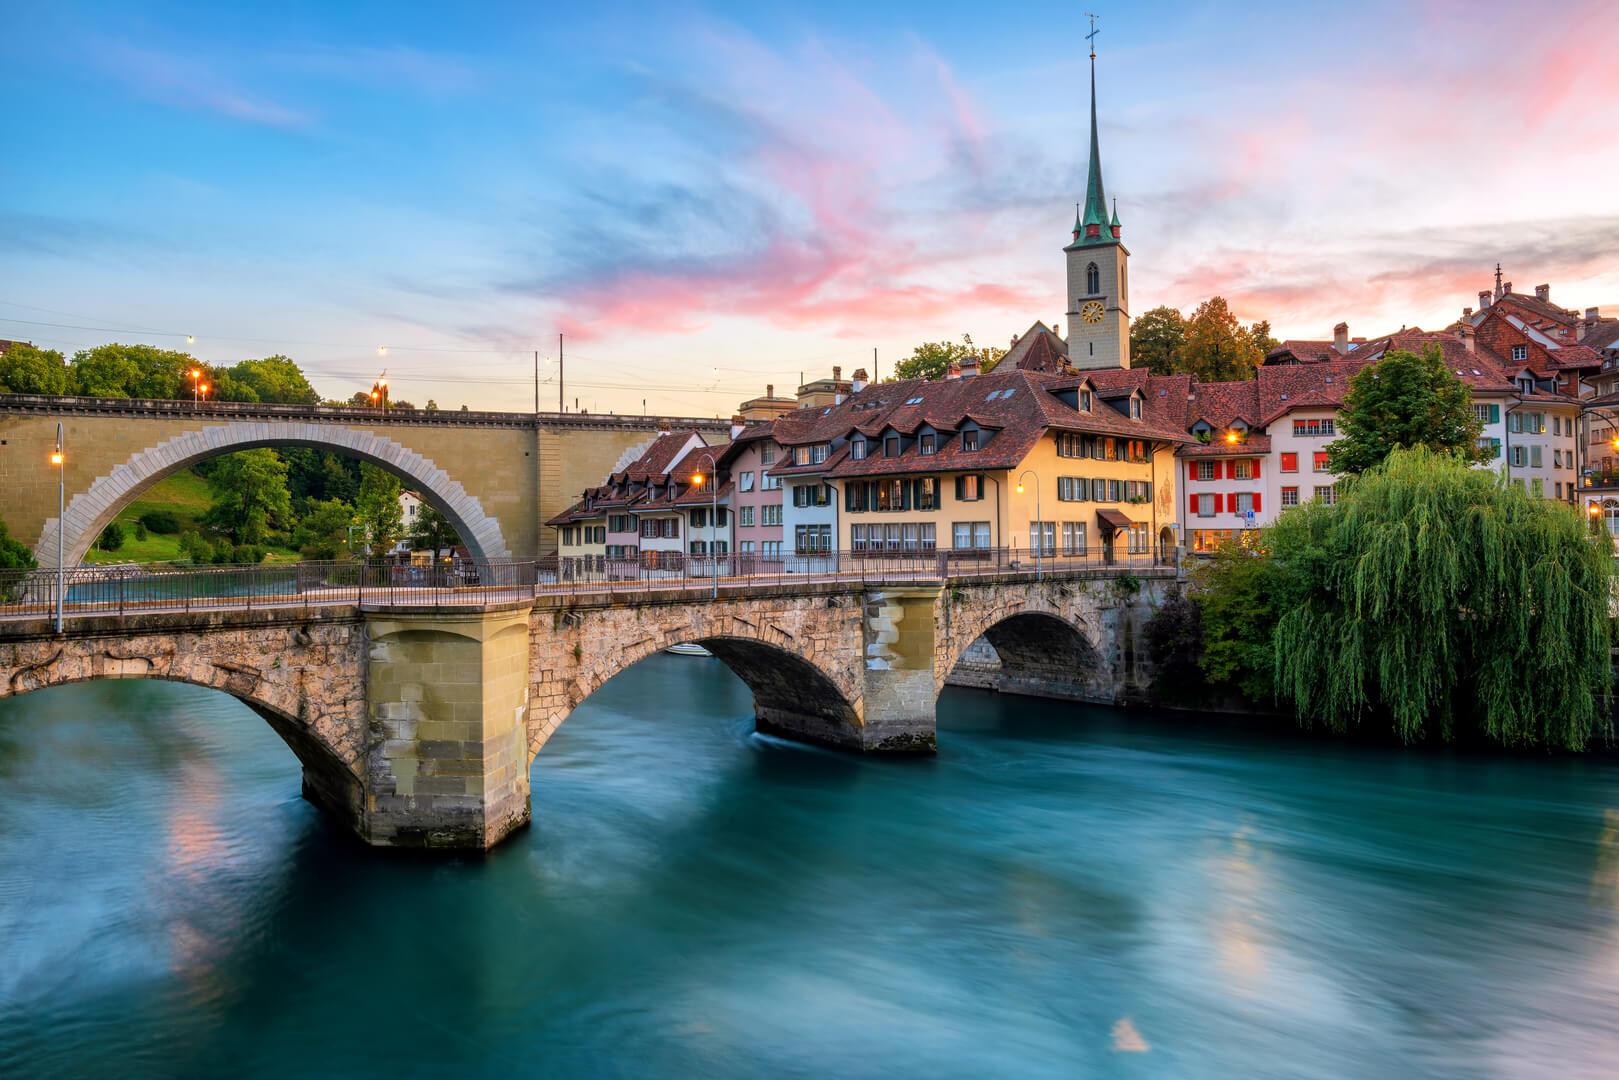 Vieille ville historique de Berne, toits de tuiles, ponts sur l'Aar et clocher de l'église sur un coucher de soleil dramatique, Suisse.